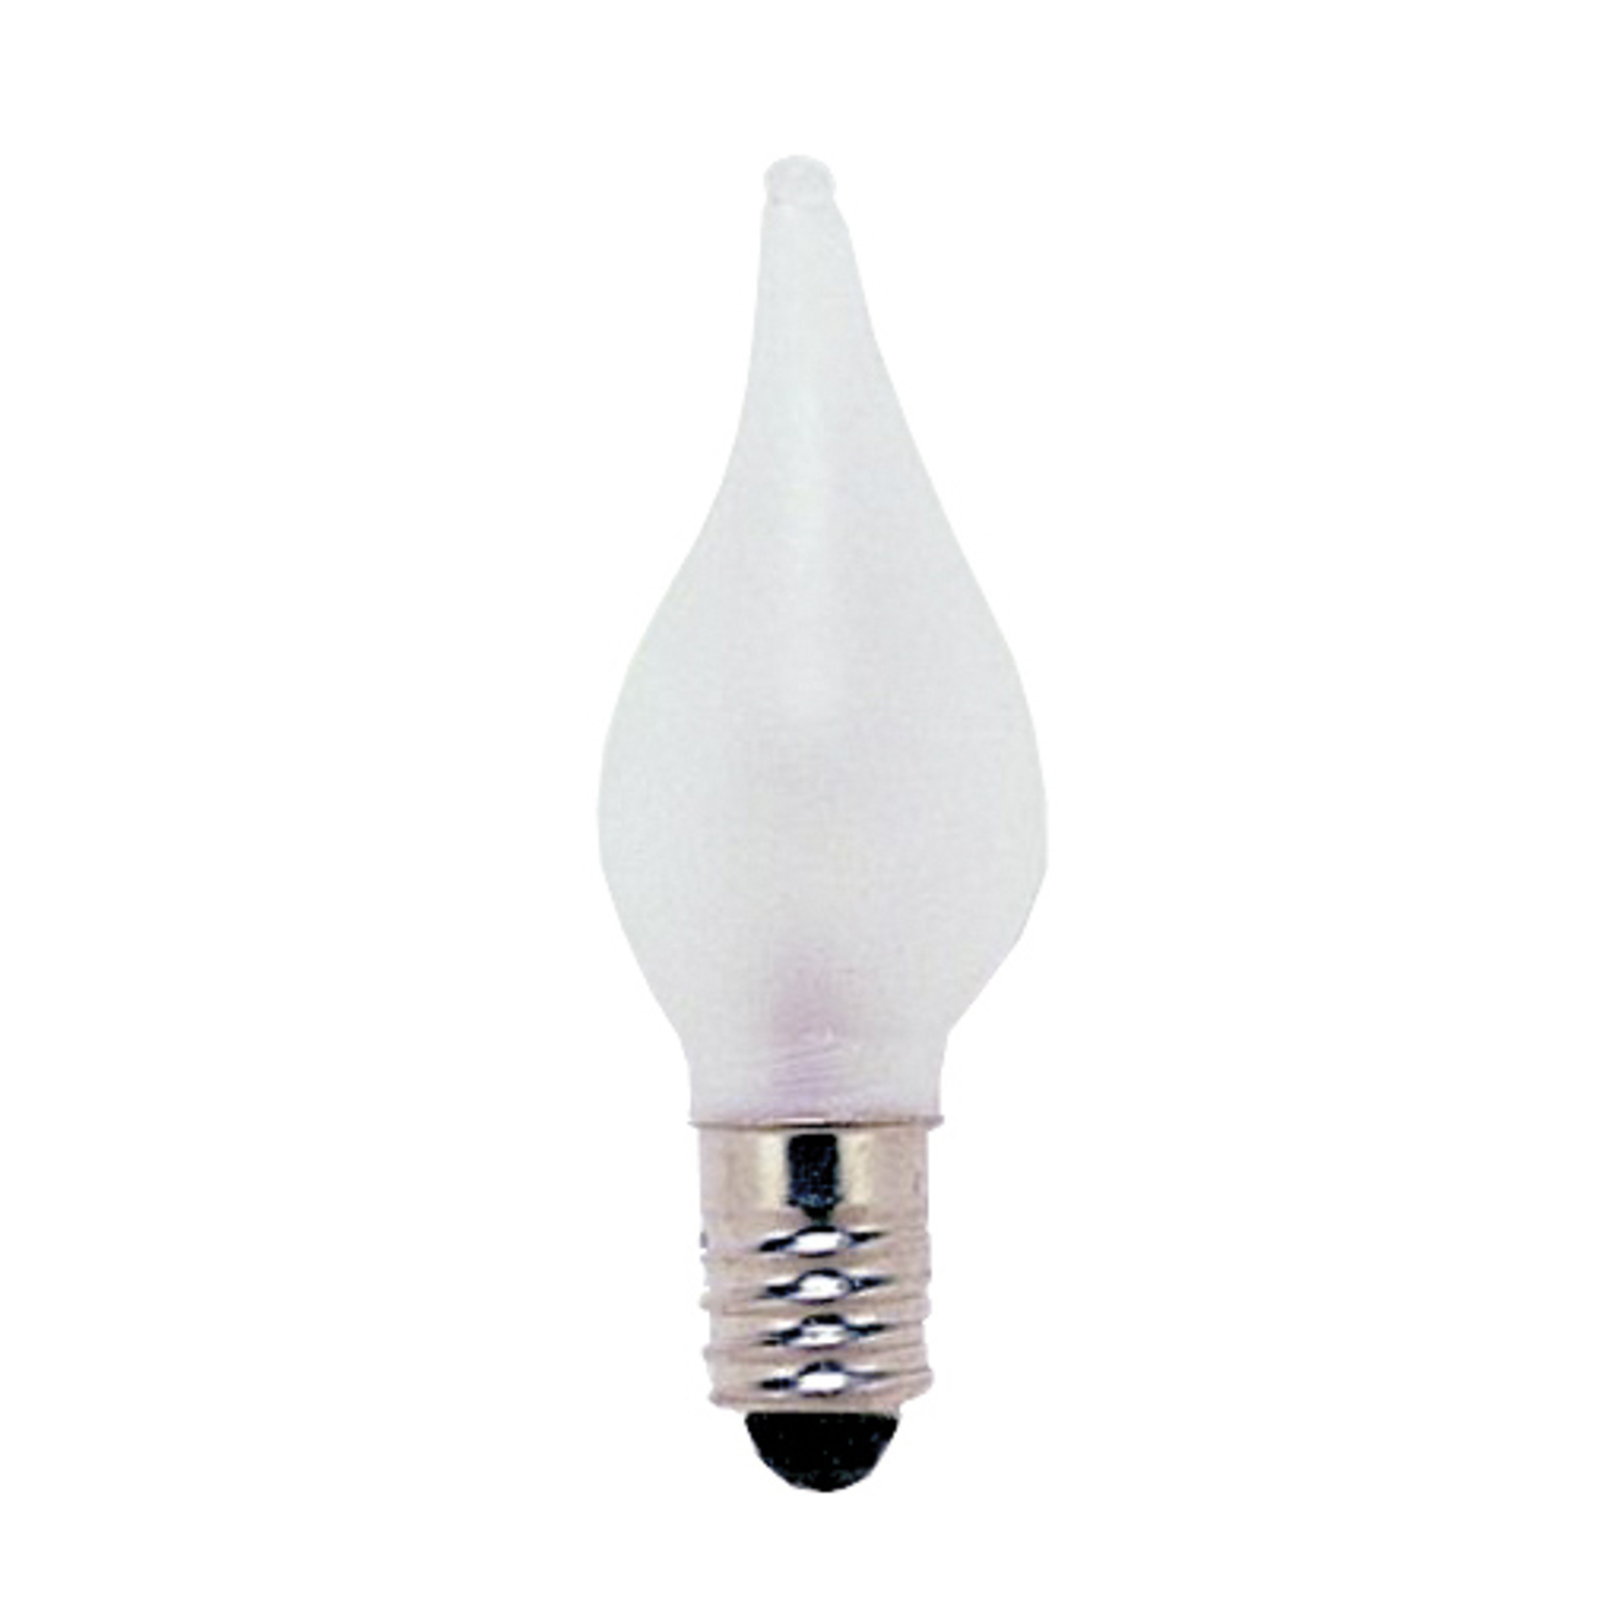 24V lampki E10 1,8W do świecznika NV 3 szt.